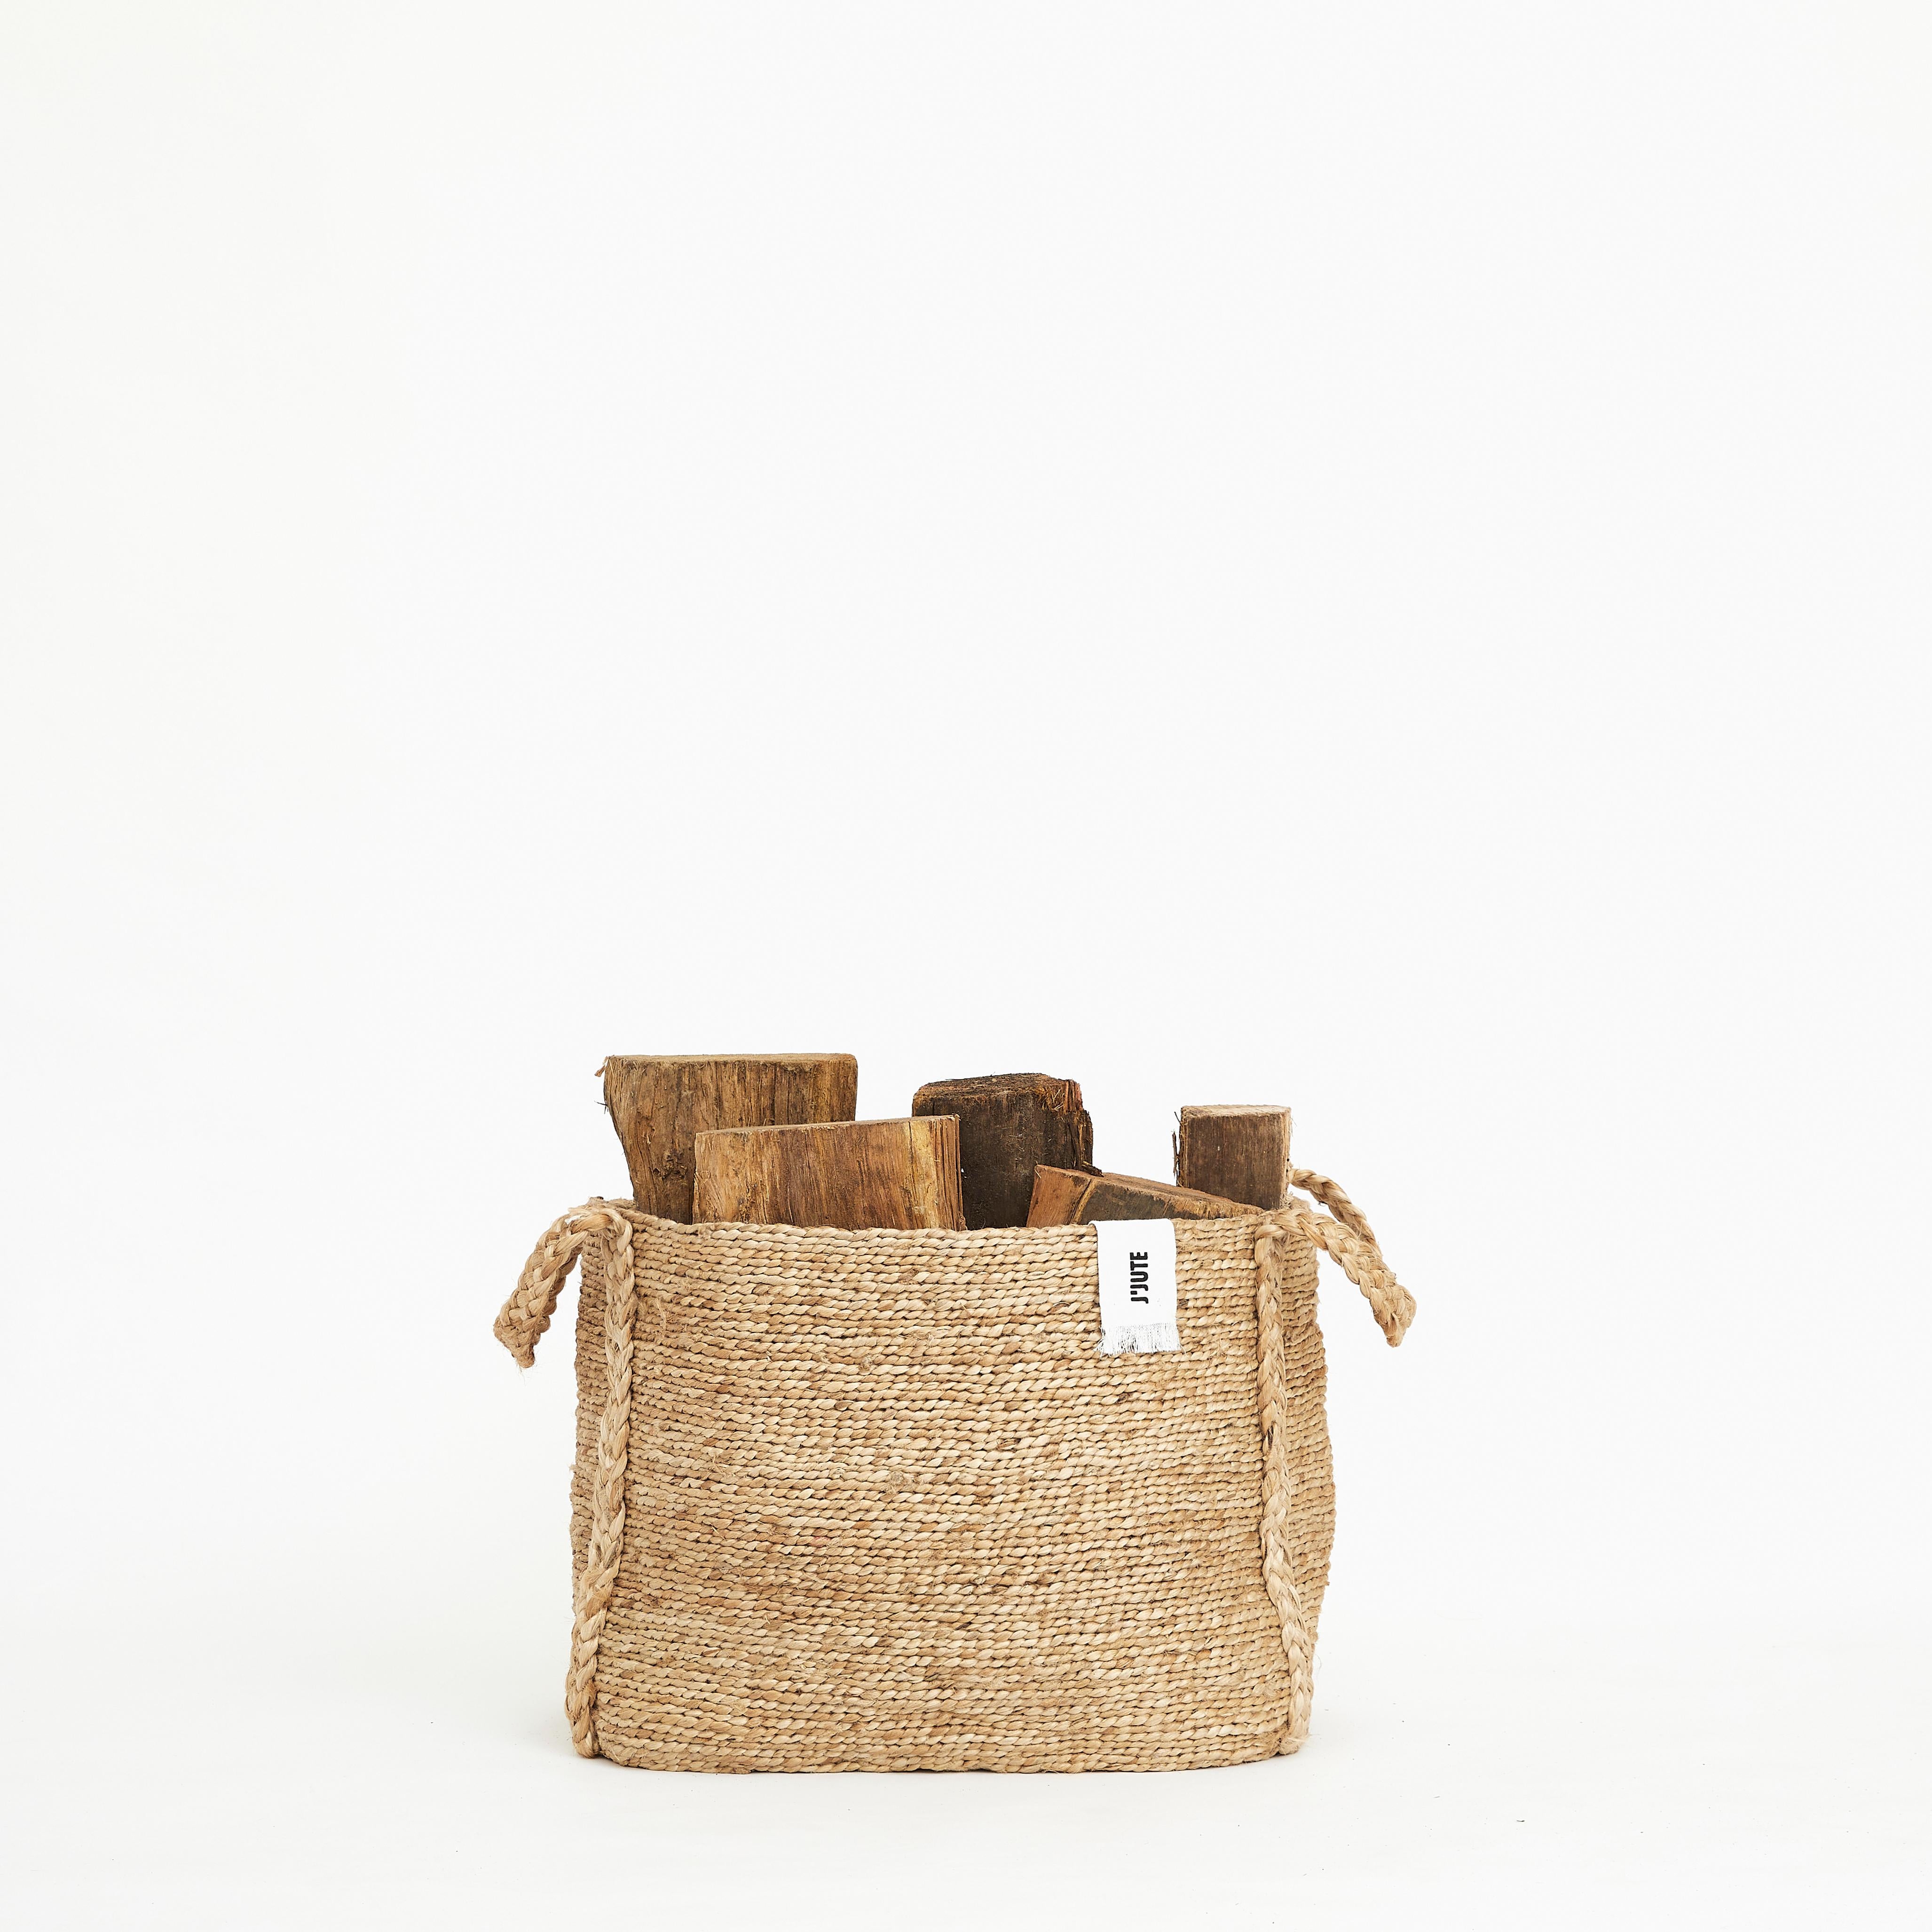 Jute Baskets Maya Set of 3, by J'Jute For Sale 1